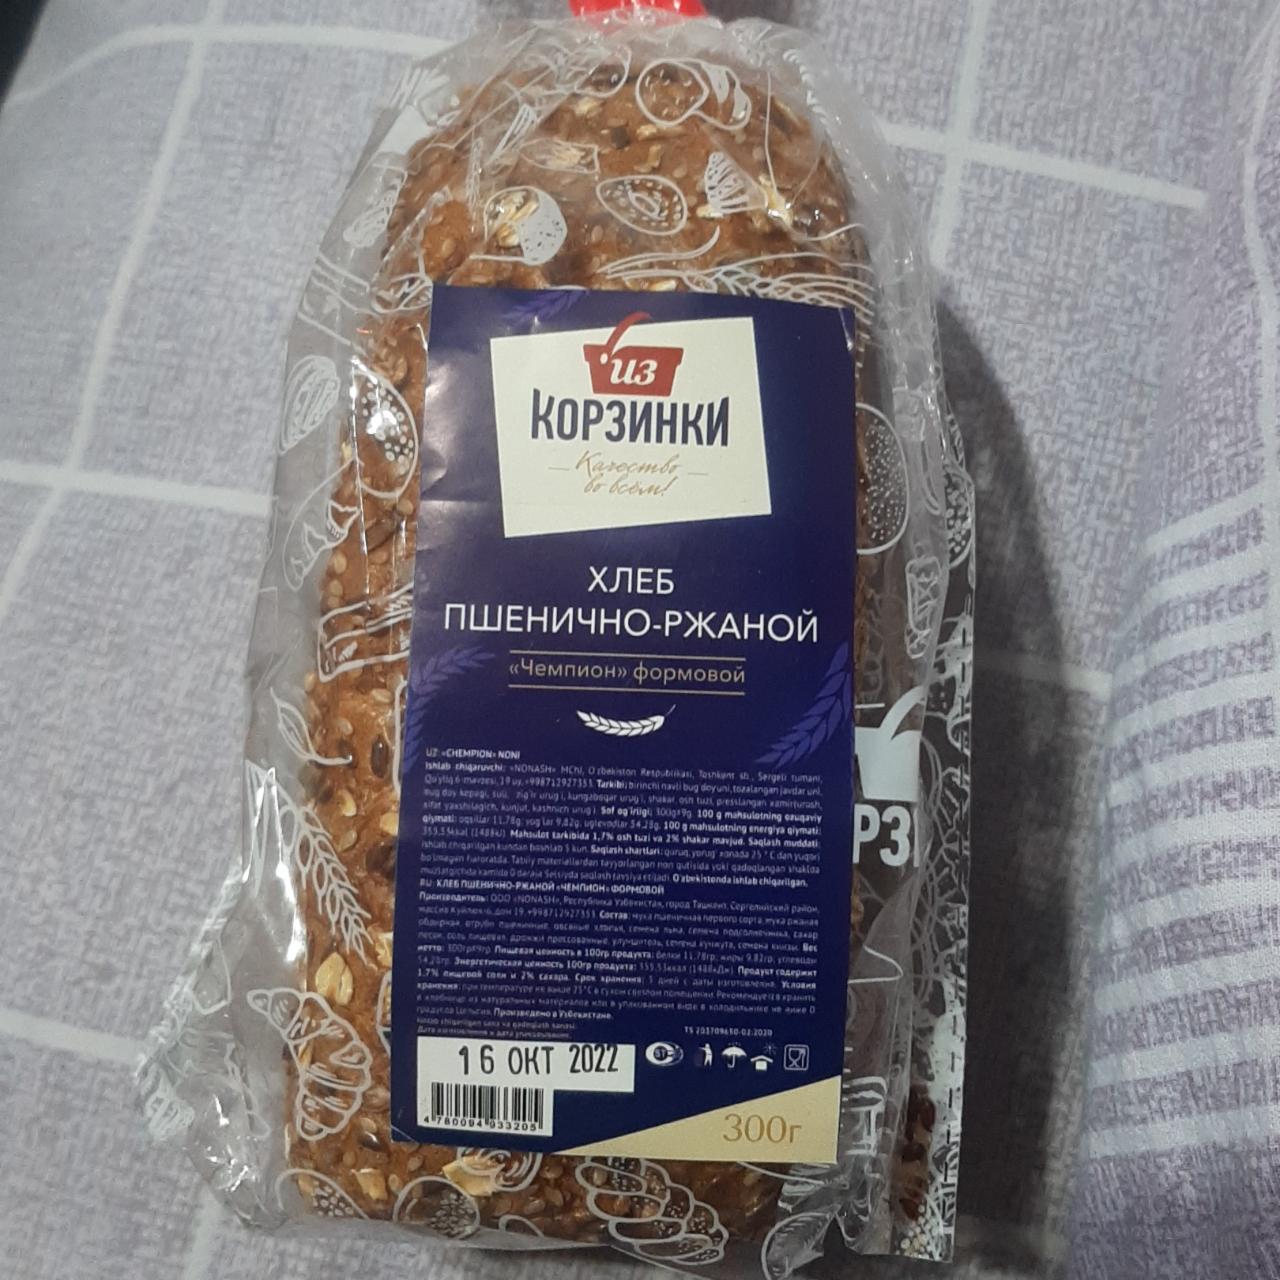 Фото - из корзинки хлеб пшенично-ржаной Чемпион формовой Из Корзинки